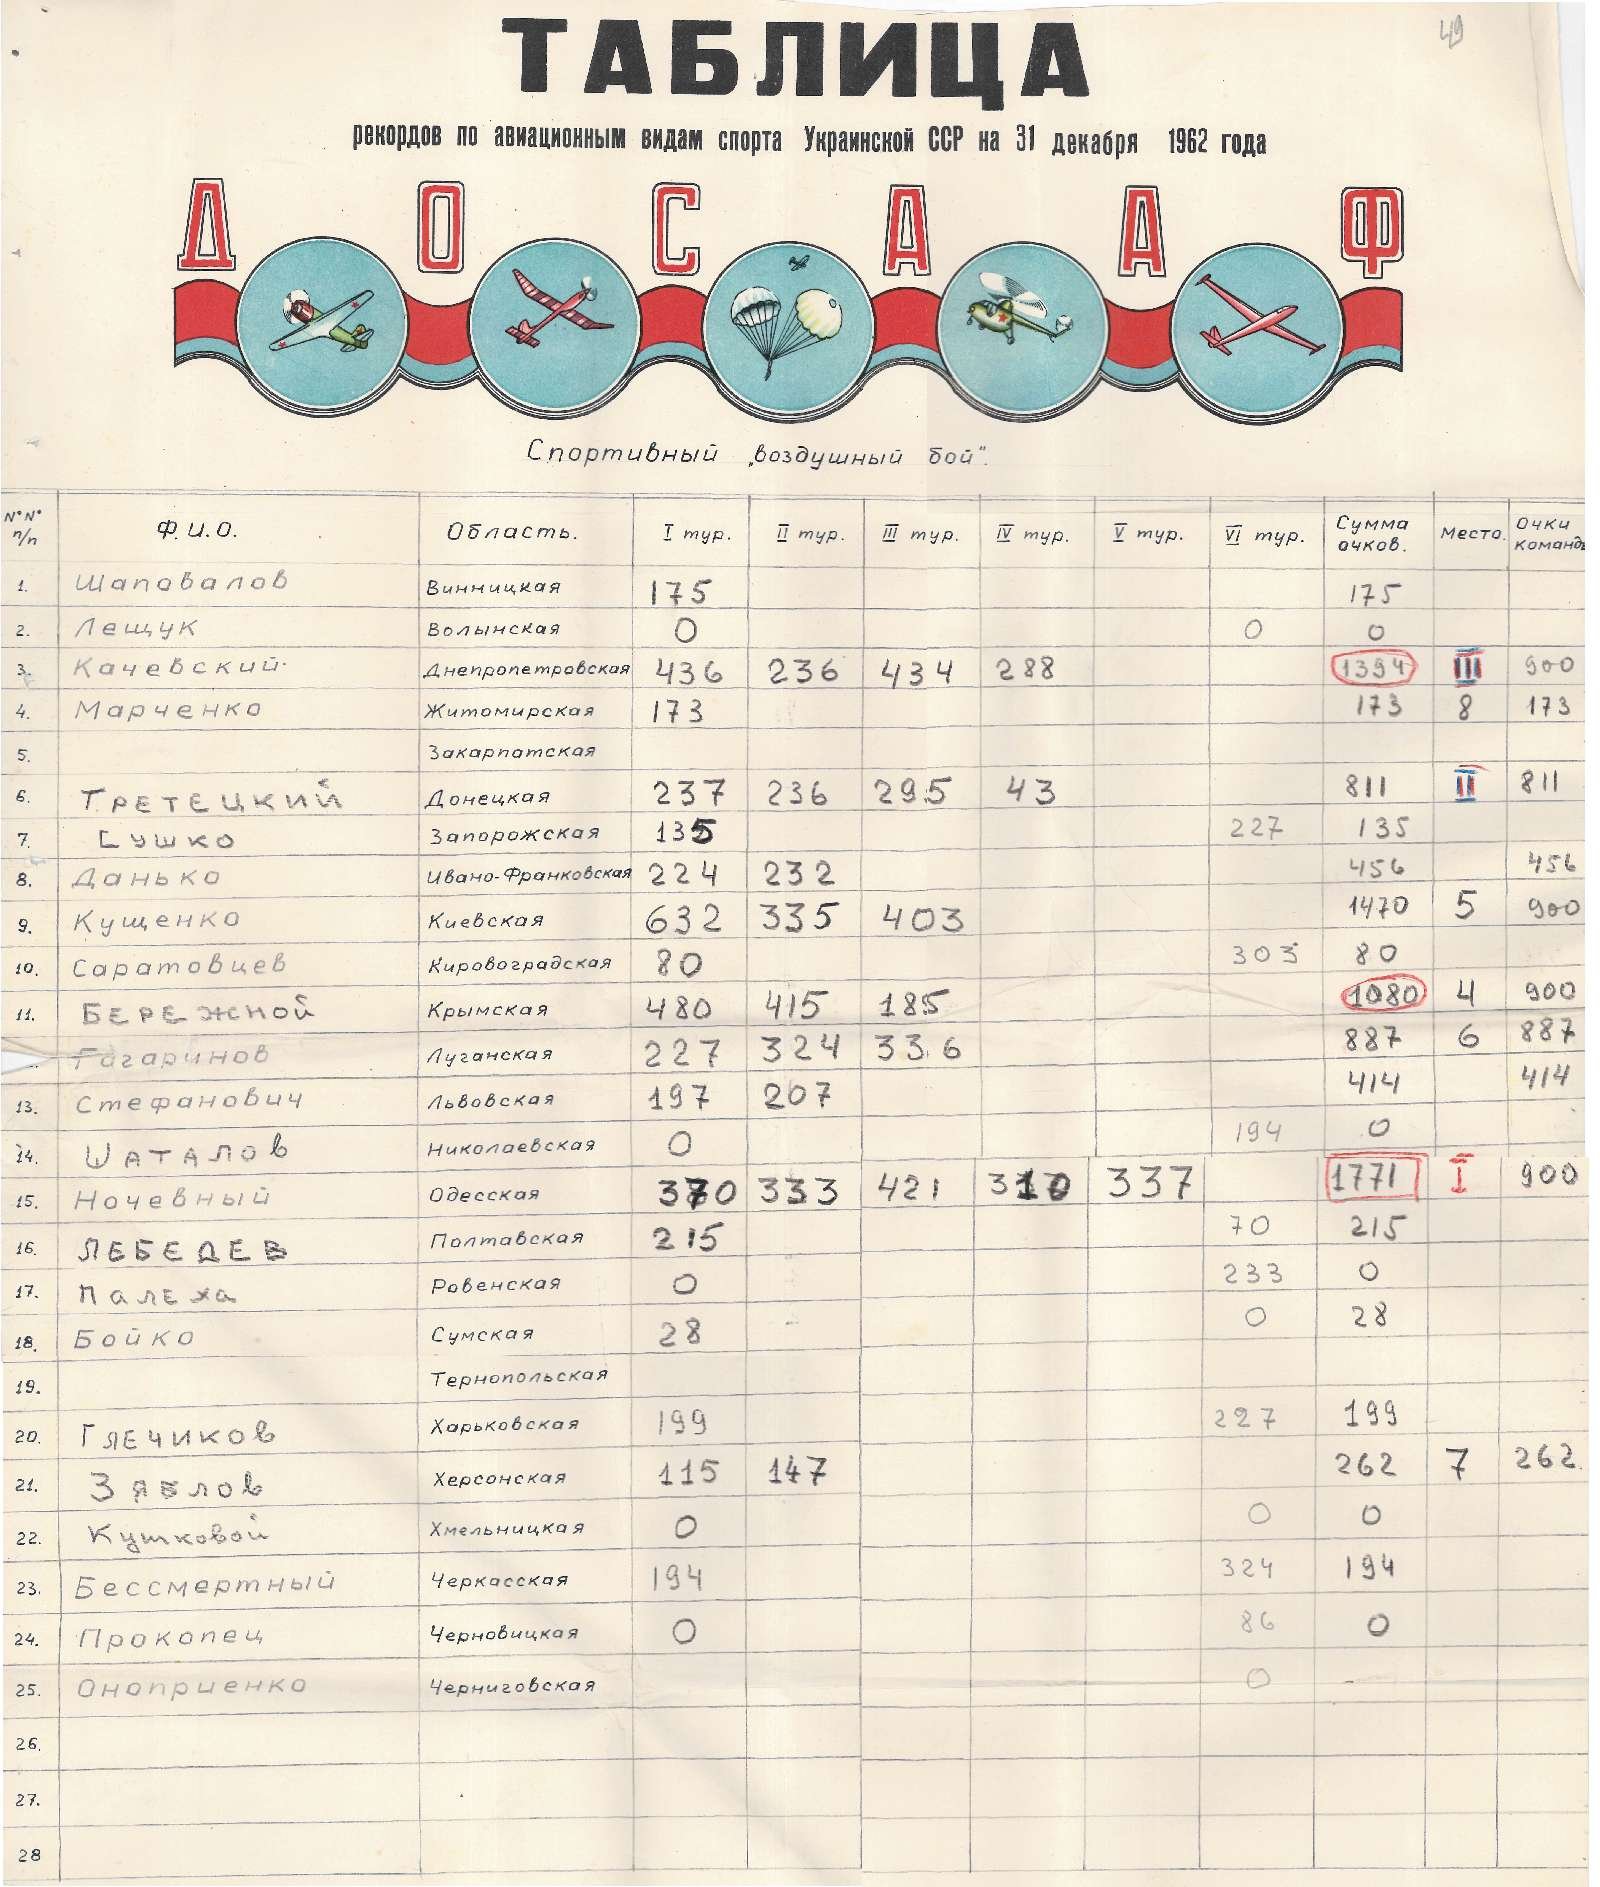 Таблиця рекордів з авіаційних видів спорту Української РСР станом на 31 грудня 1962 року. 1962 р.